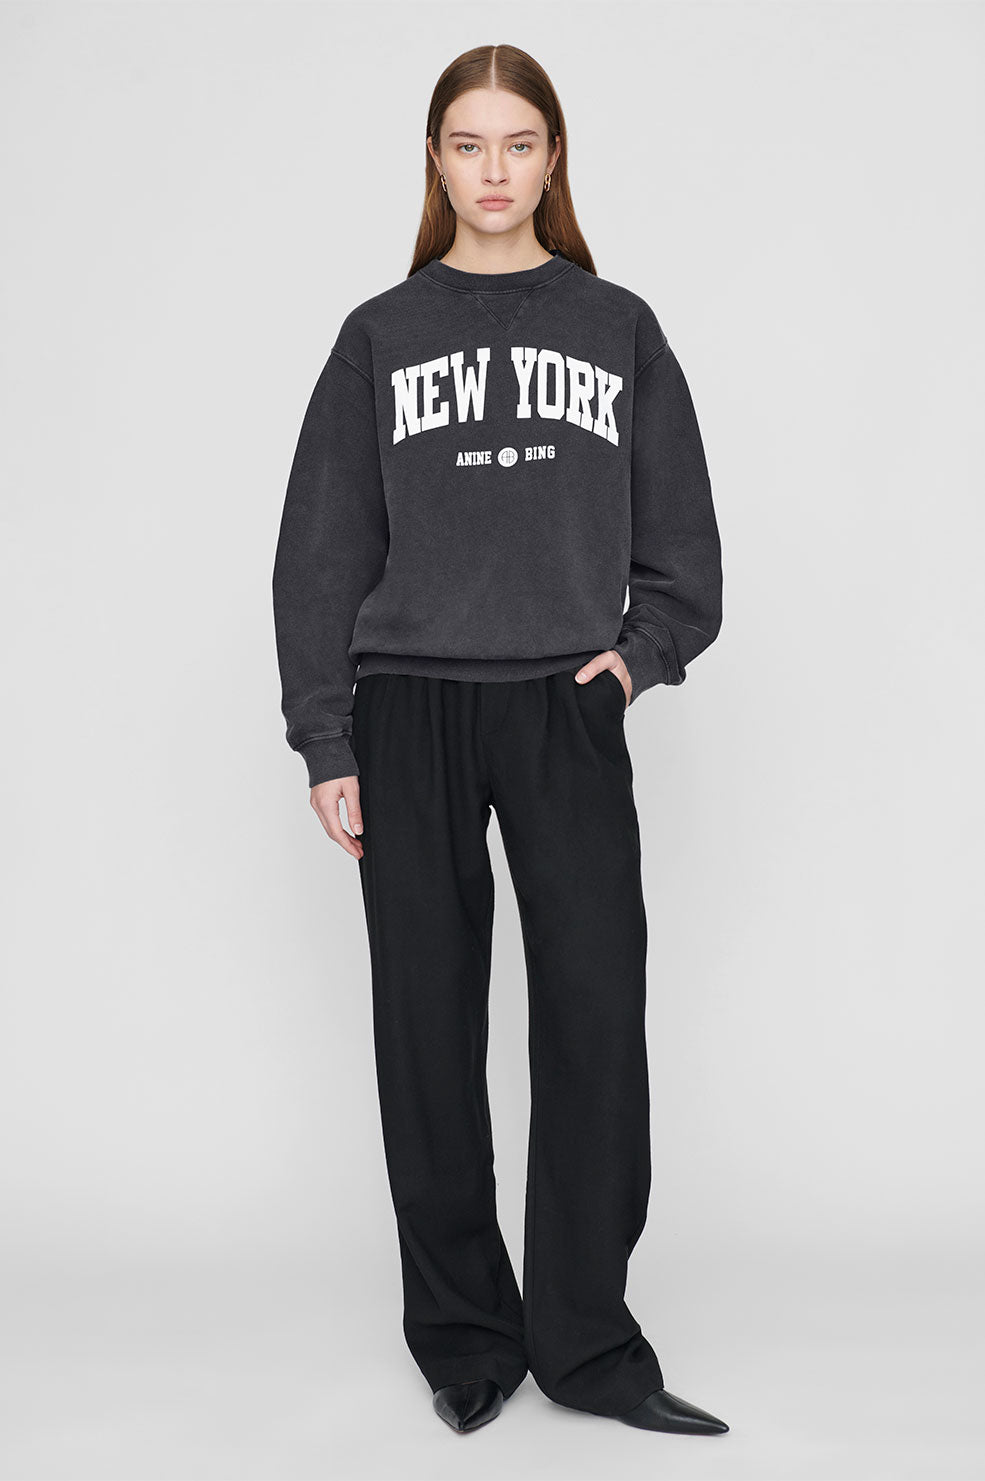 Ramona printed sweatshirt 'New York', washed black